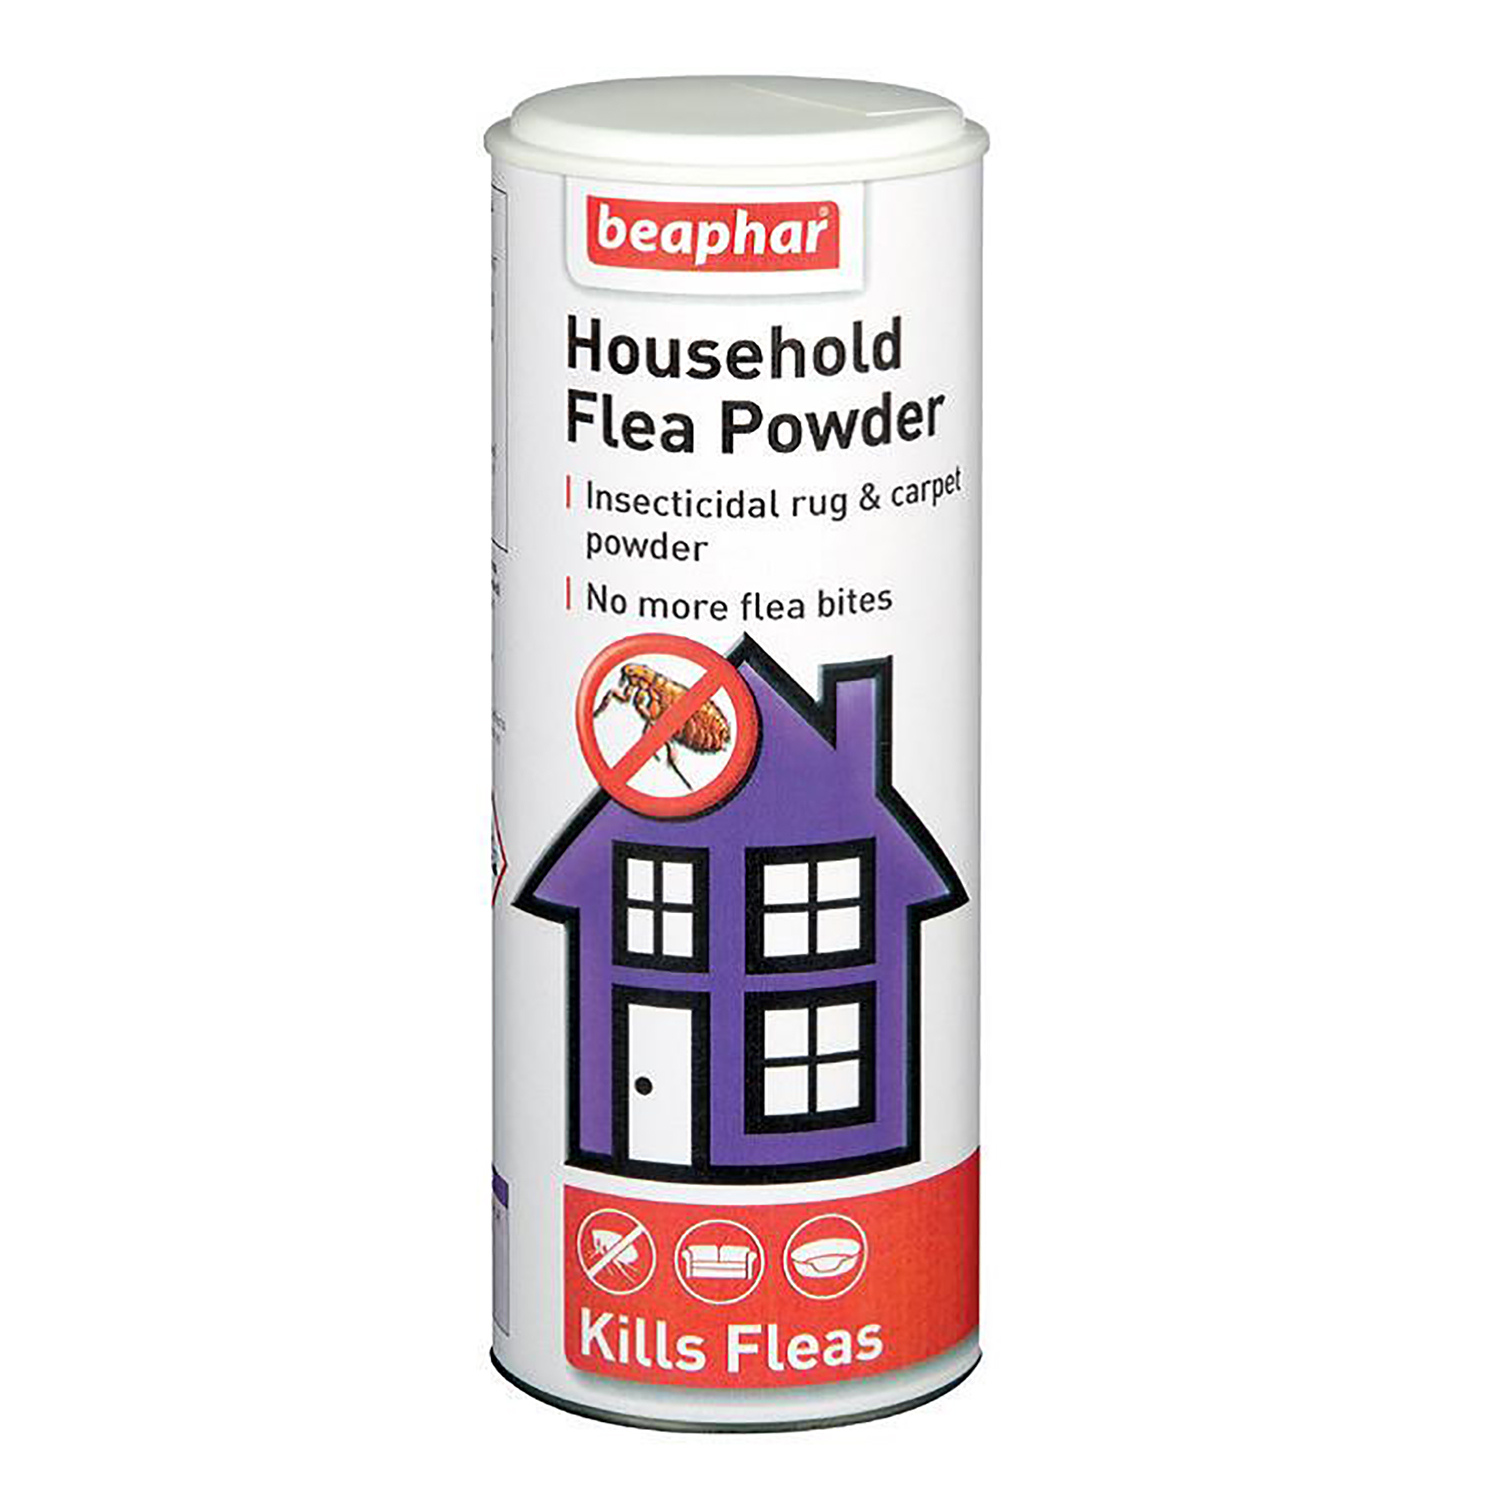 Beaphar Household Flea Powder 300g Image